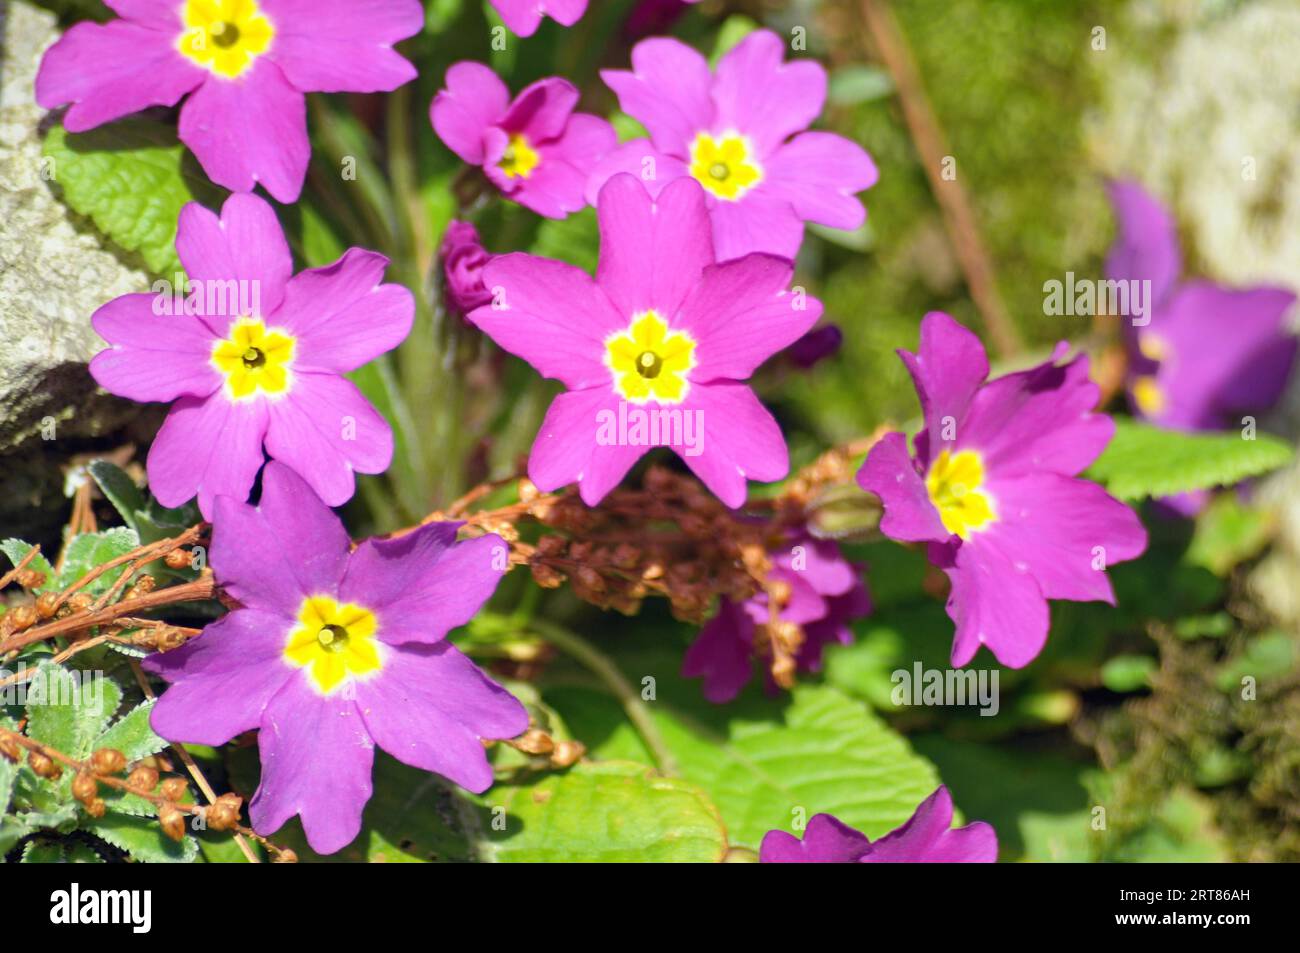 Spring flowering panicles saxifrage Stock Photo